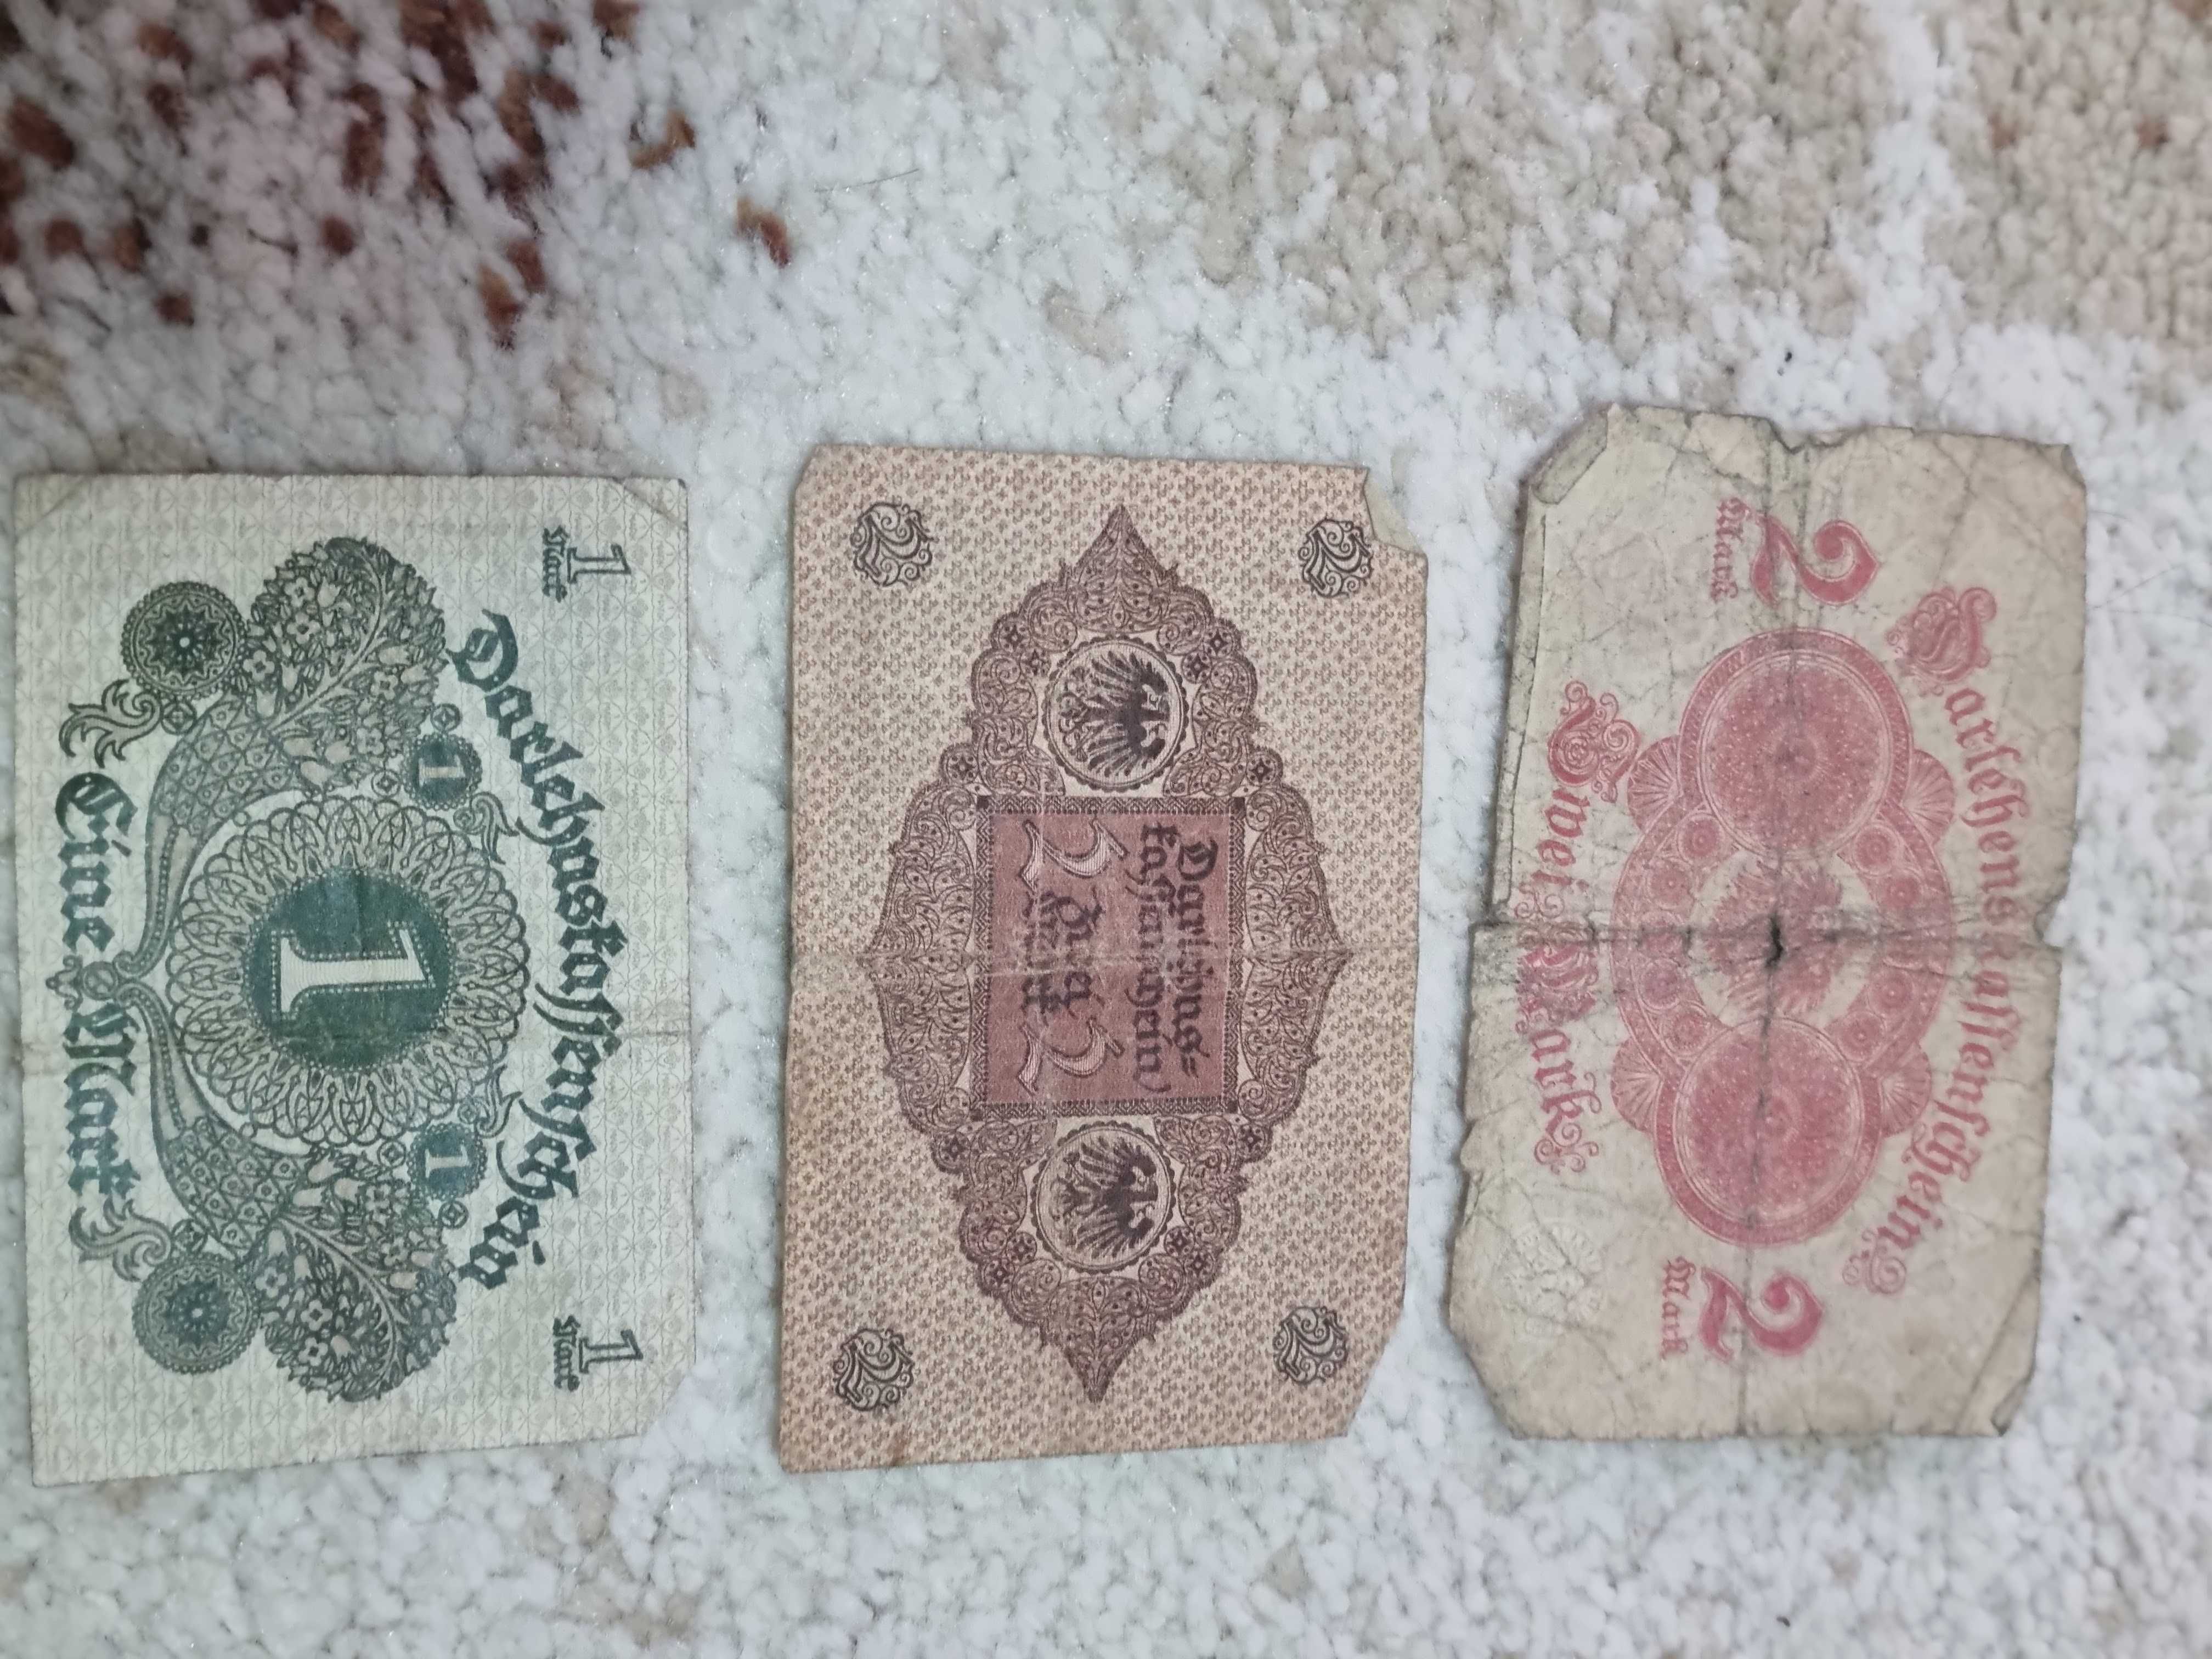 Vând bancnote vechi nemțești